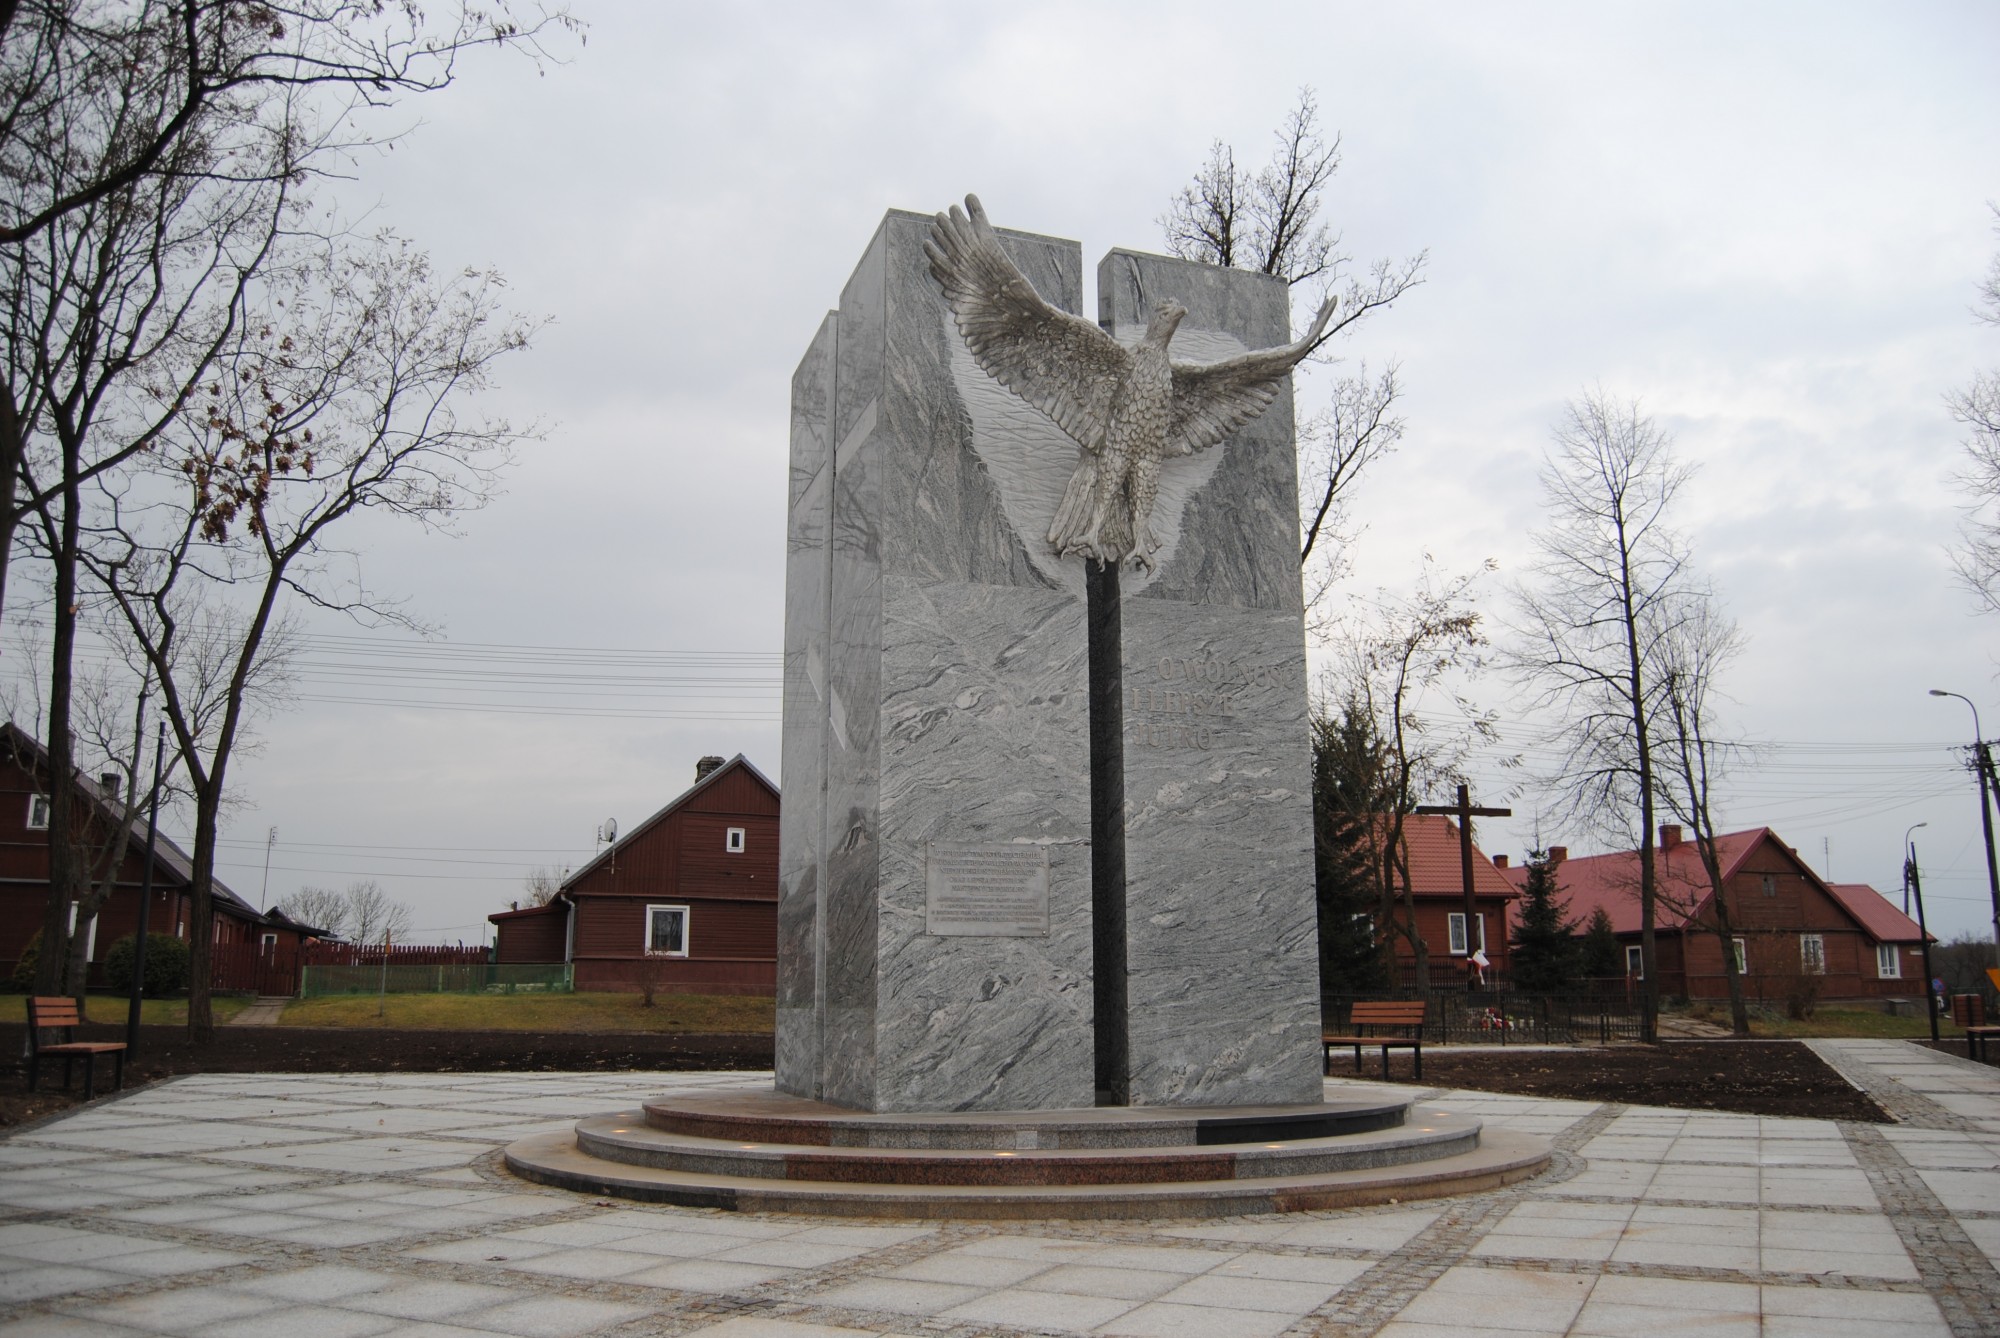 Pomnik z Orłem w Michałowie; kamień i aluminium; wysokość pomnika: 500cm; wymiary orła: wysokość 180cm, rozpiętość skrzydeł 230cm